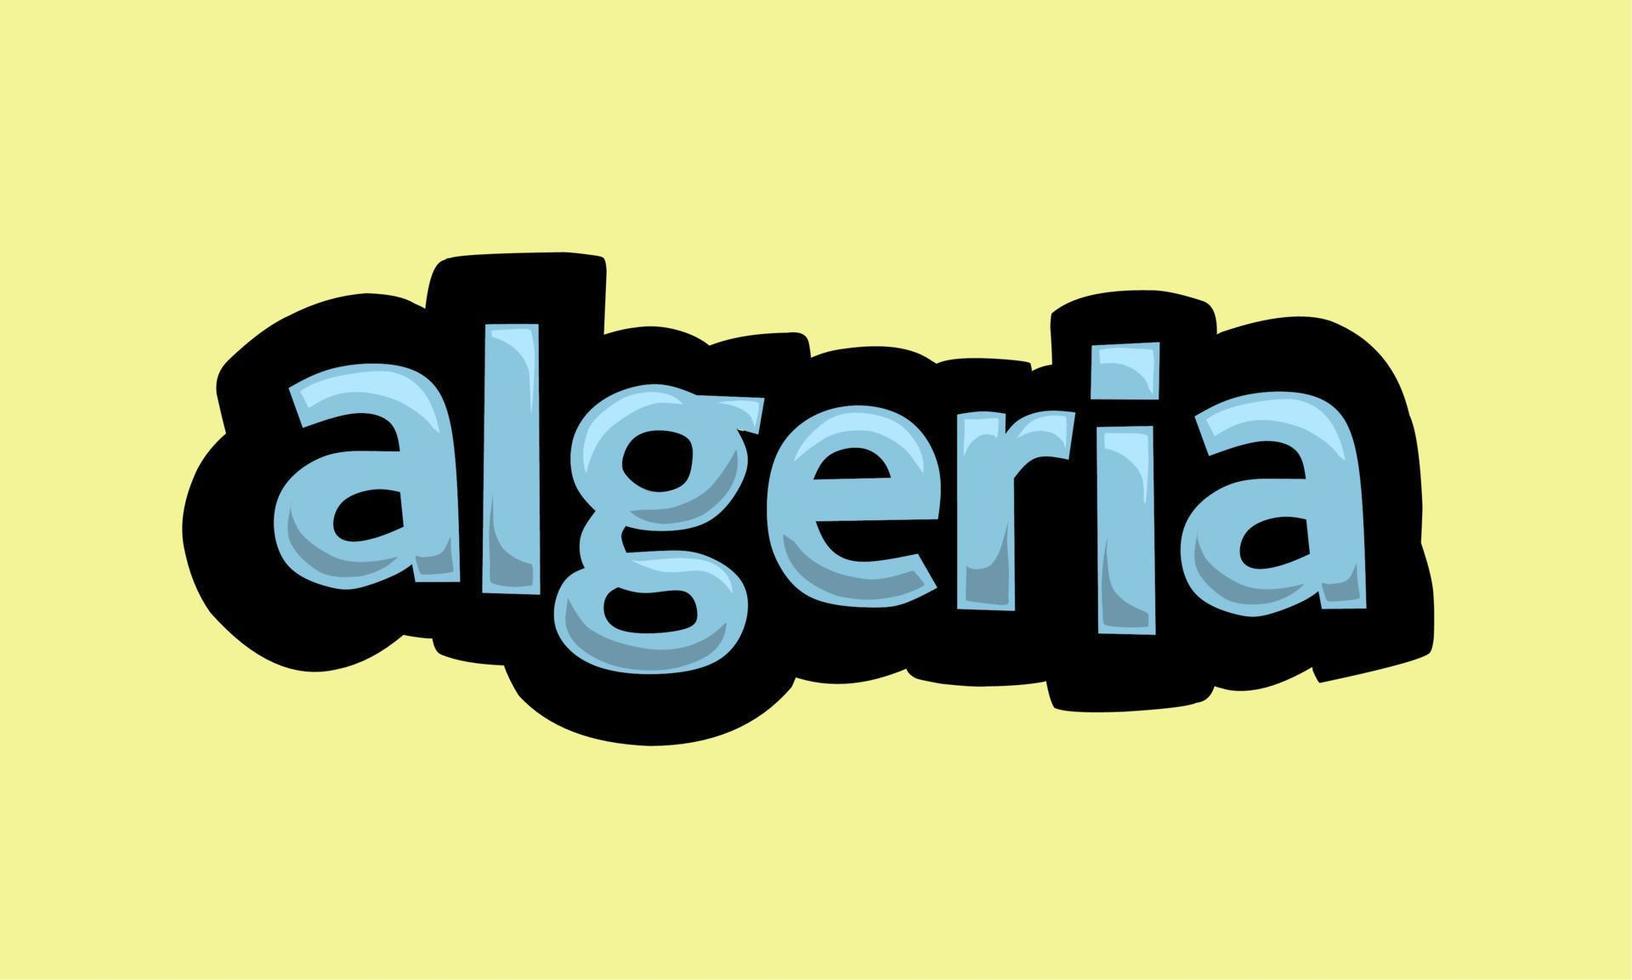 conception de vecteur d'écriture algérie sur fond jaune